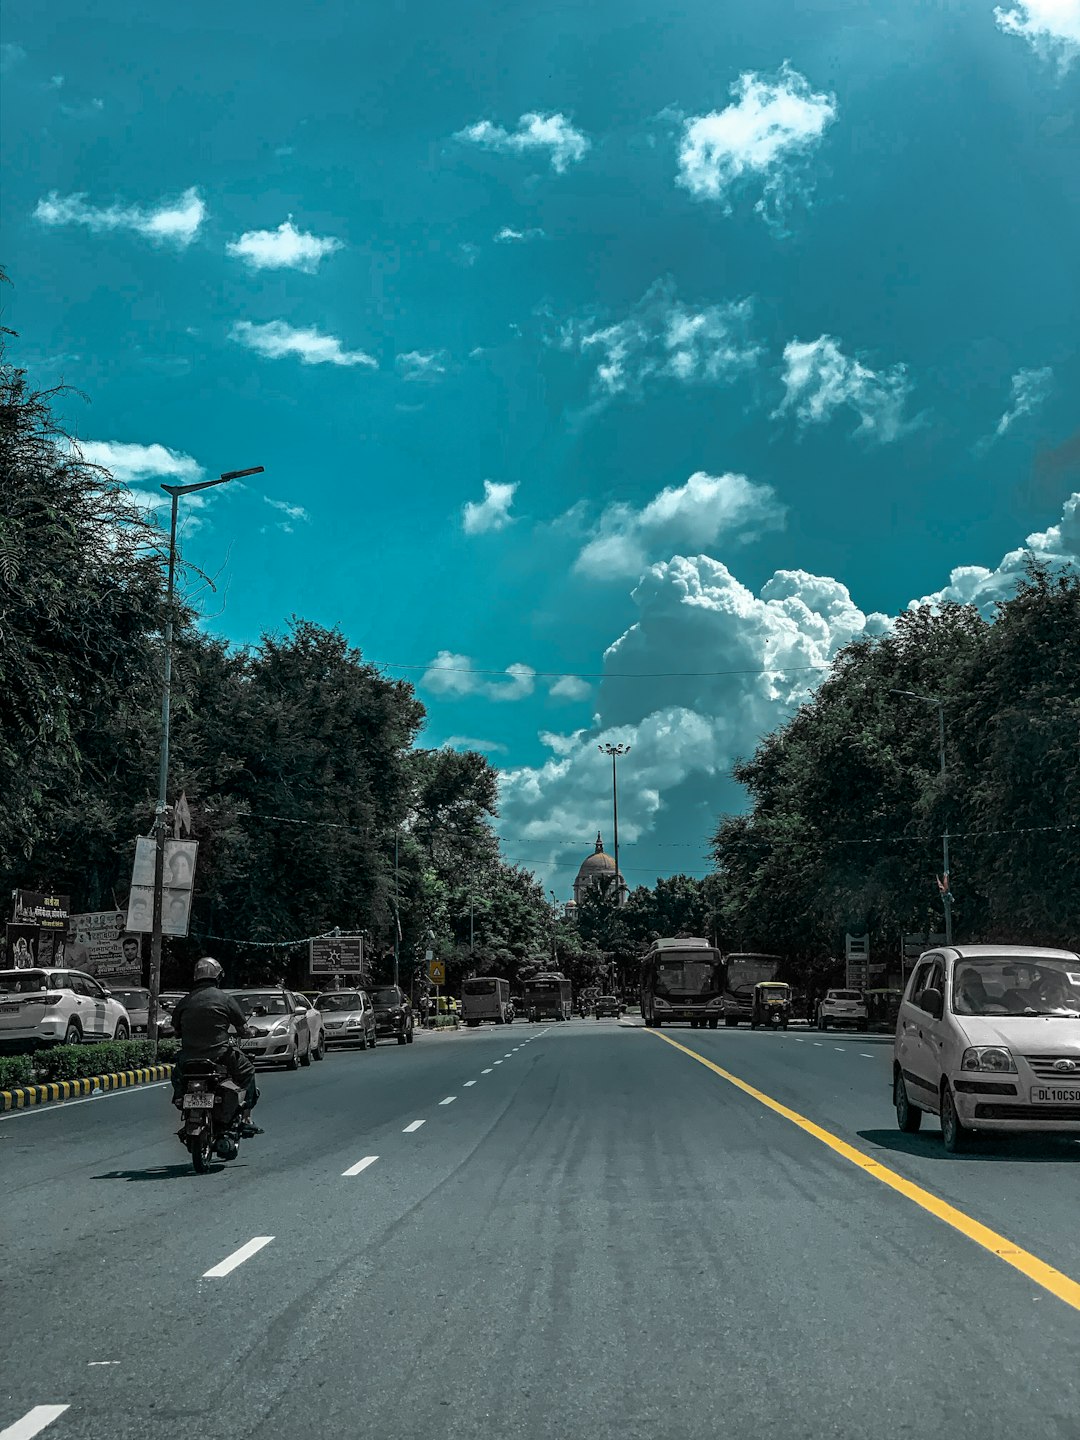 Road trip photo spot Delhi Noida